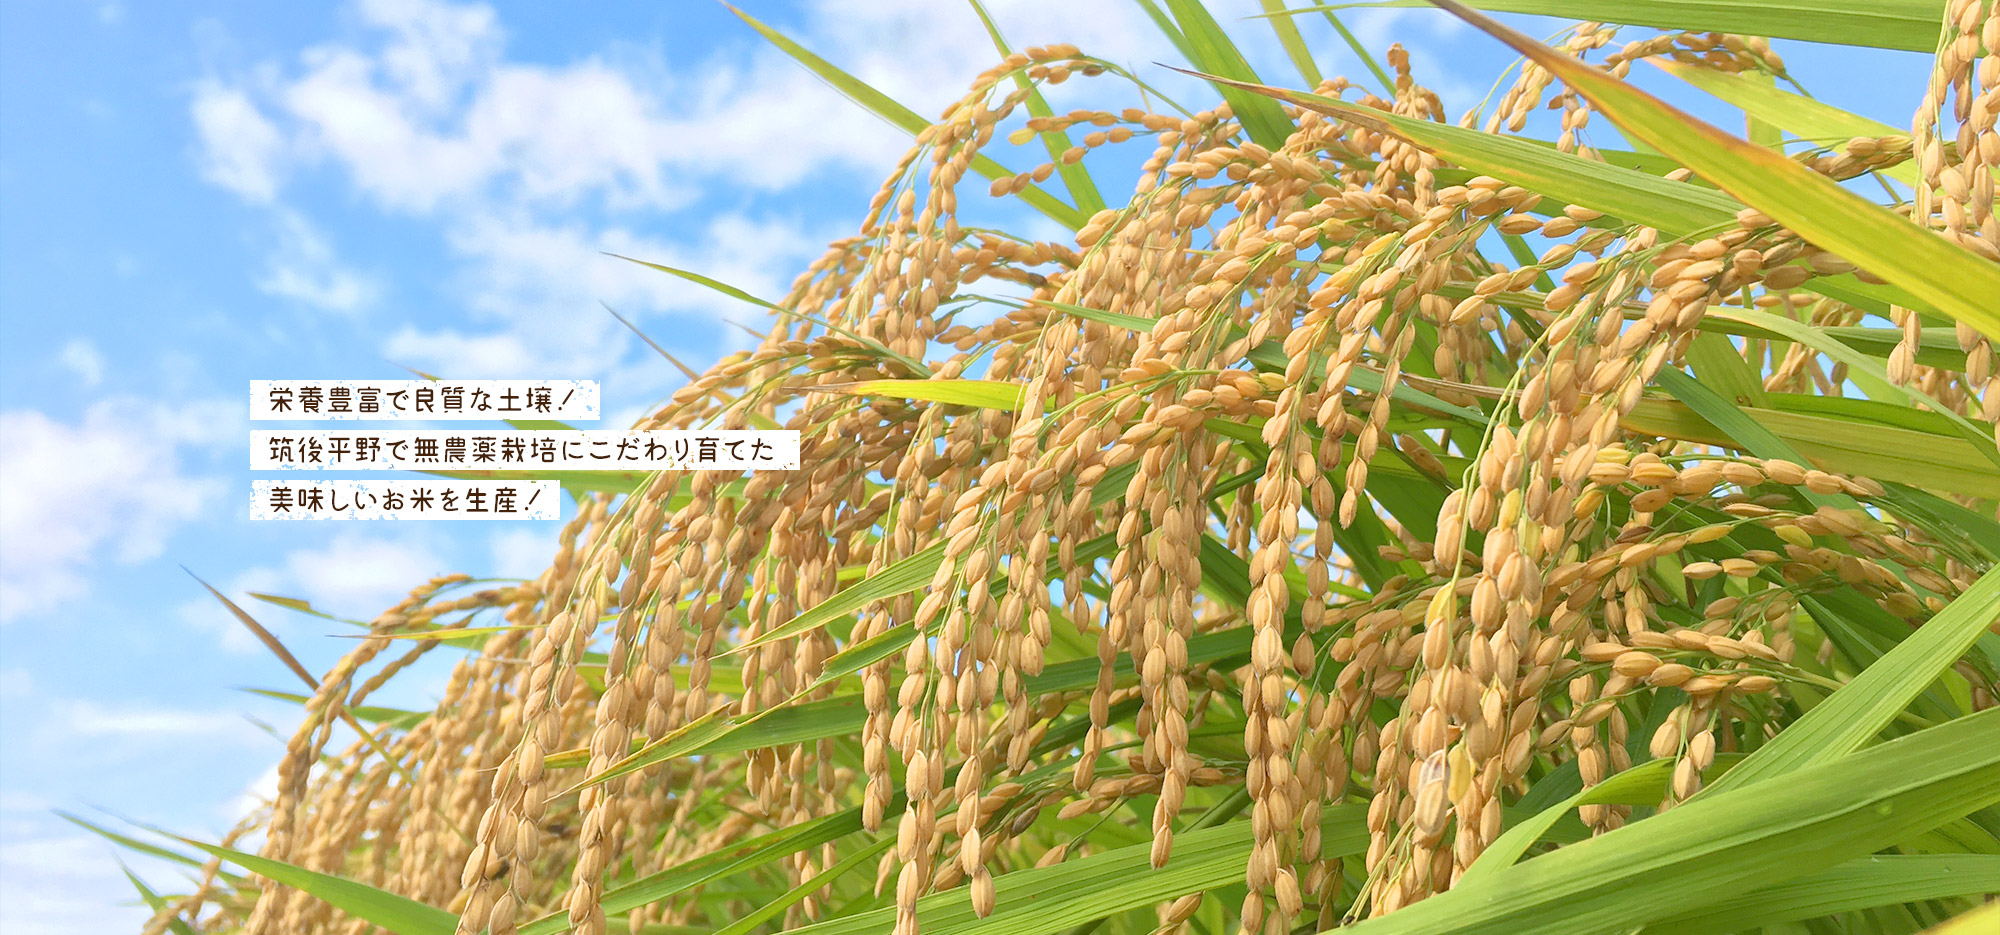 栄養豊富で良質な土壌！筑後平野で無農薬栽培にこだわり育てた美味しいお米を生産！